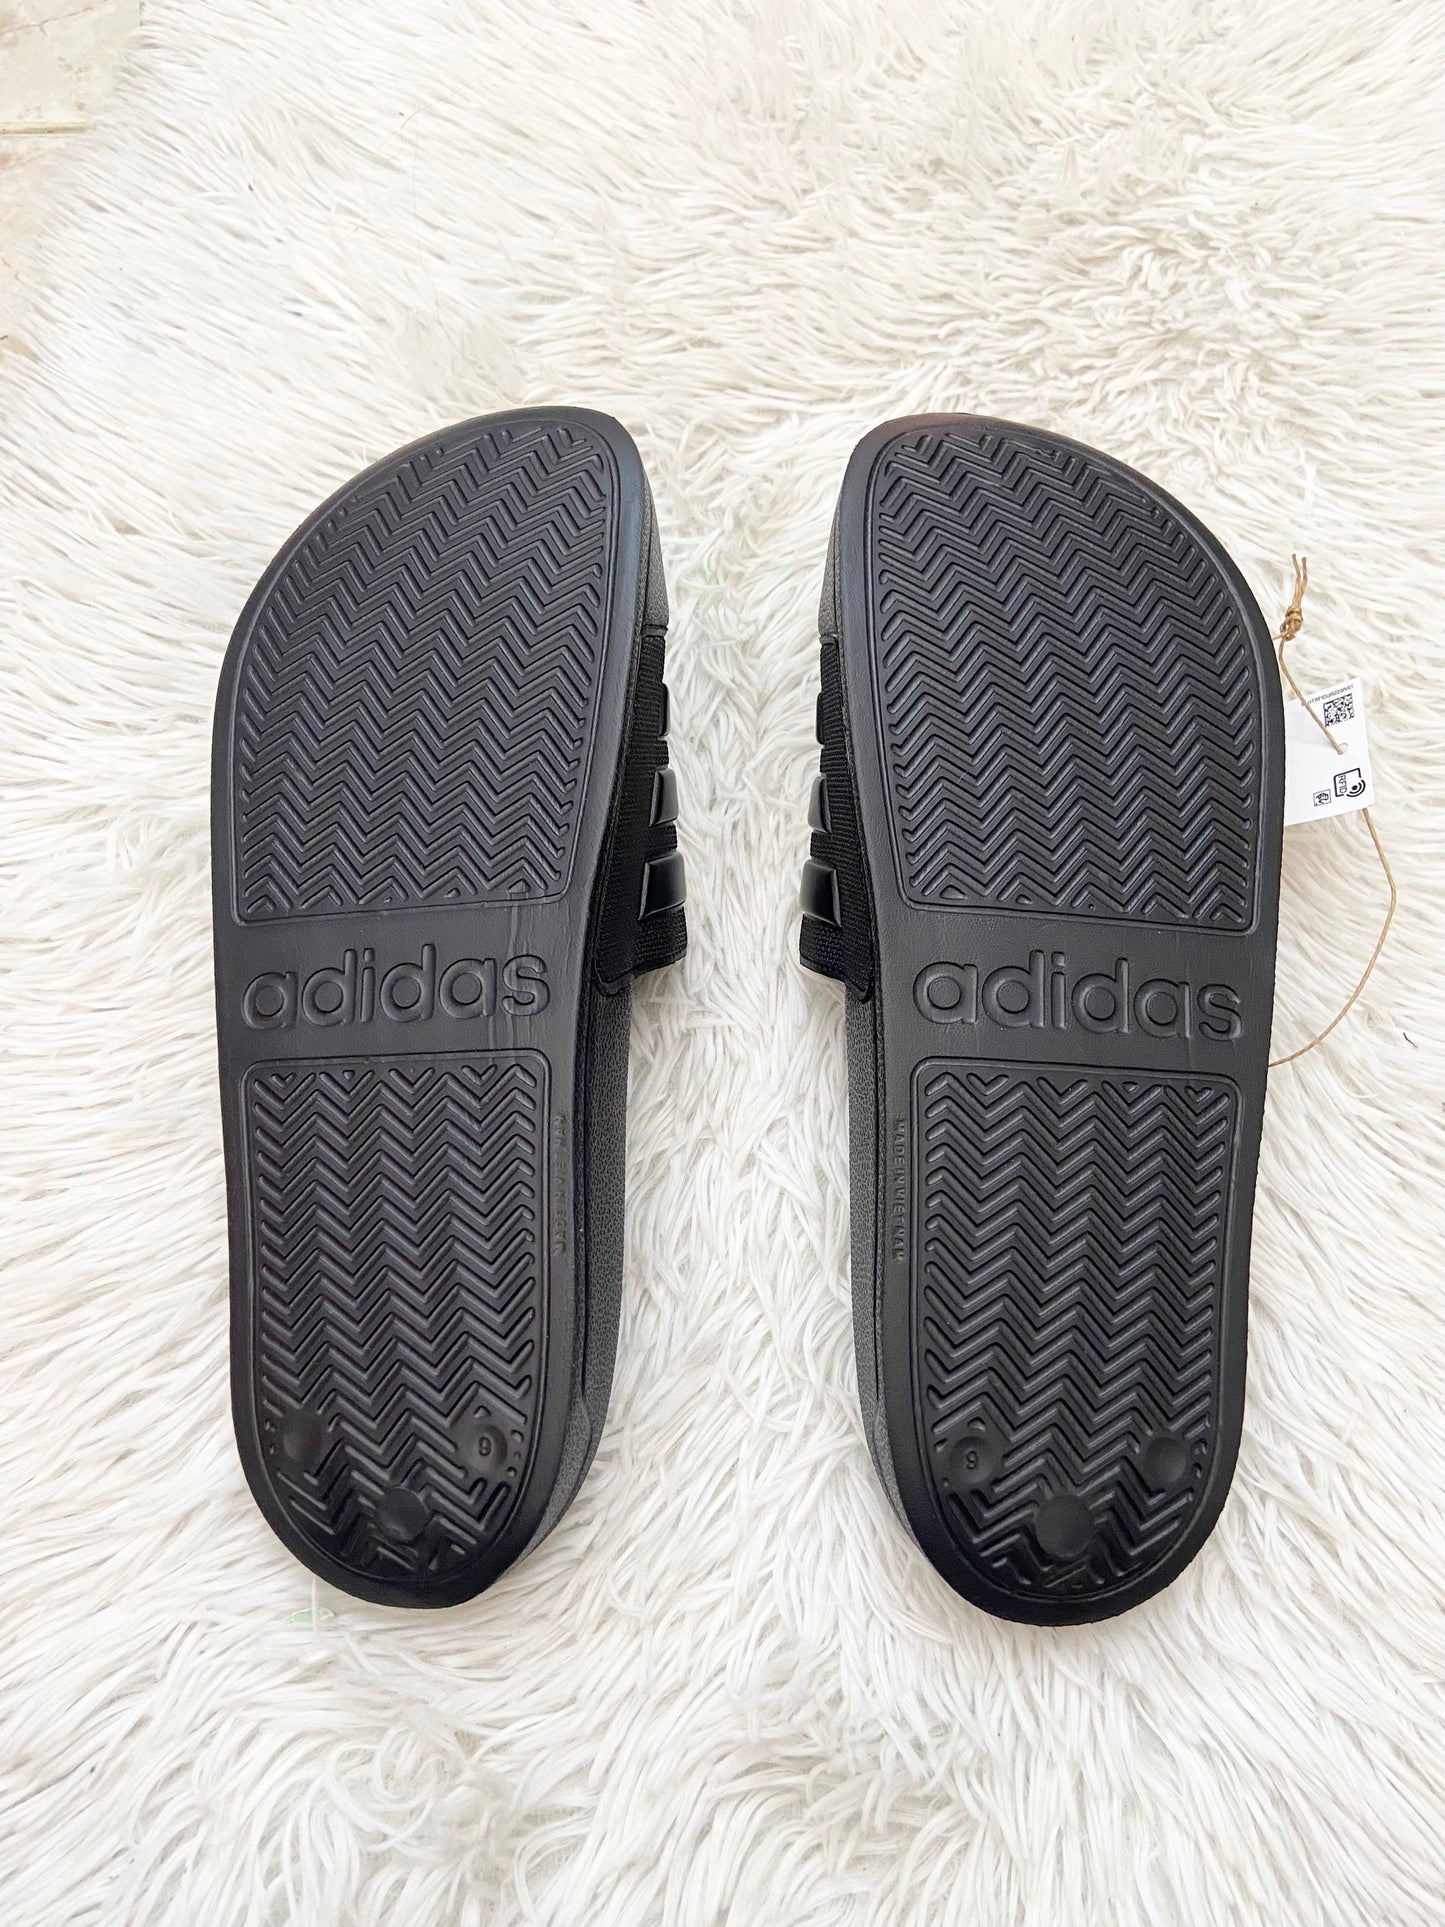 Sandalias Adidas original negra lisa con líneas en color negro en frente y letras ADIDAS al lado.